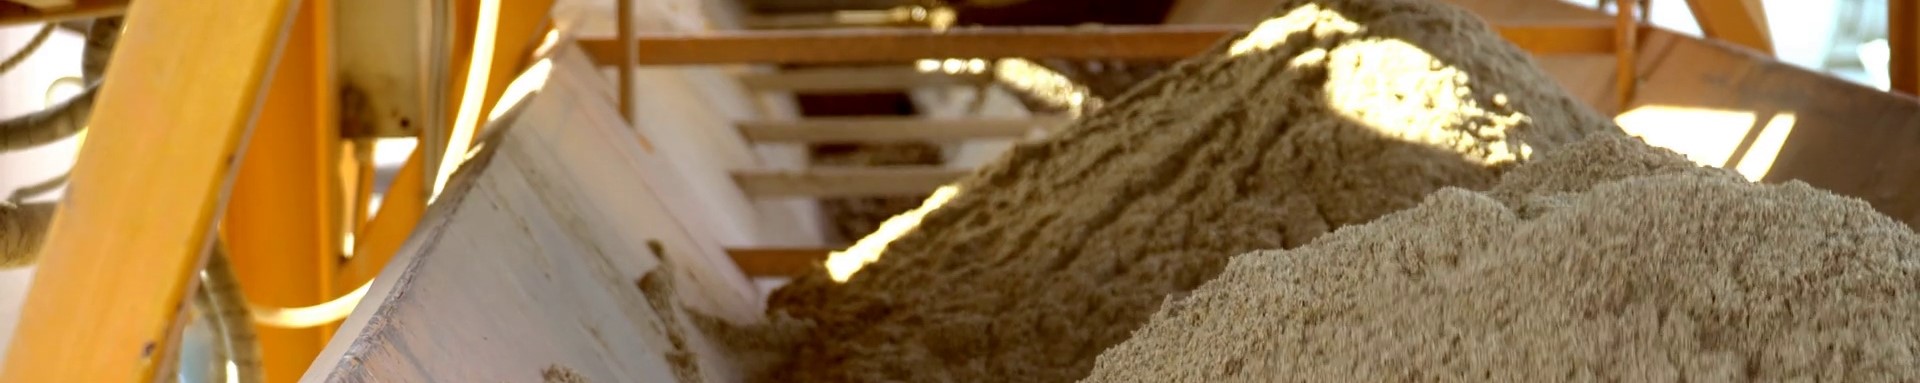 Песок для бетона в Колпино: где купить цена с площадки или карьера